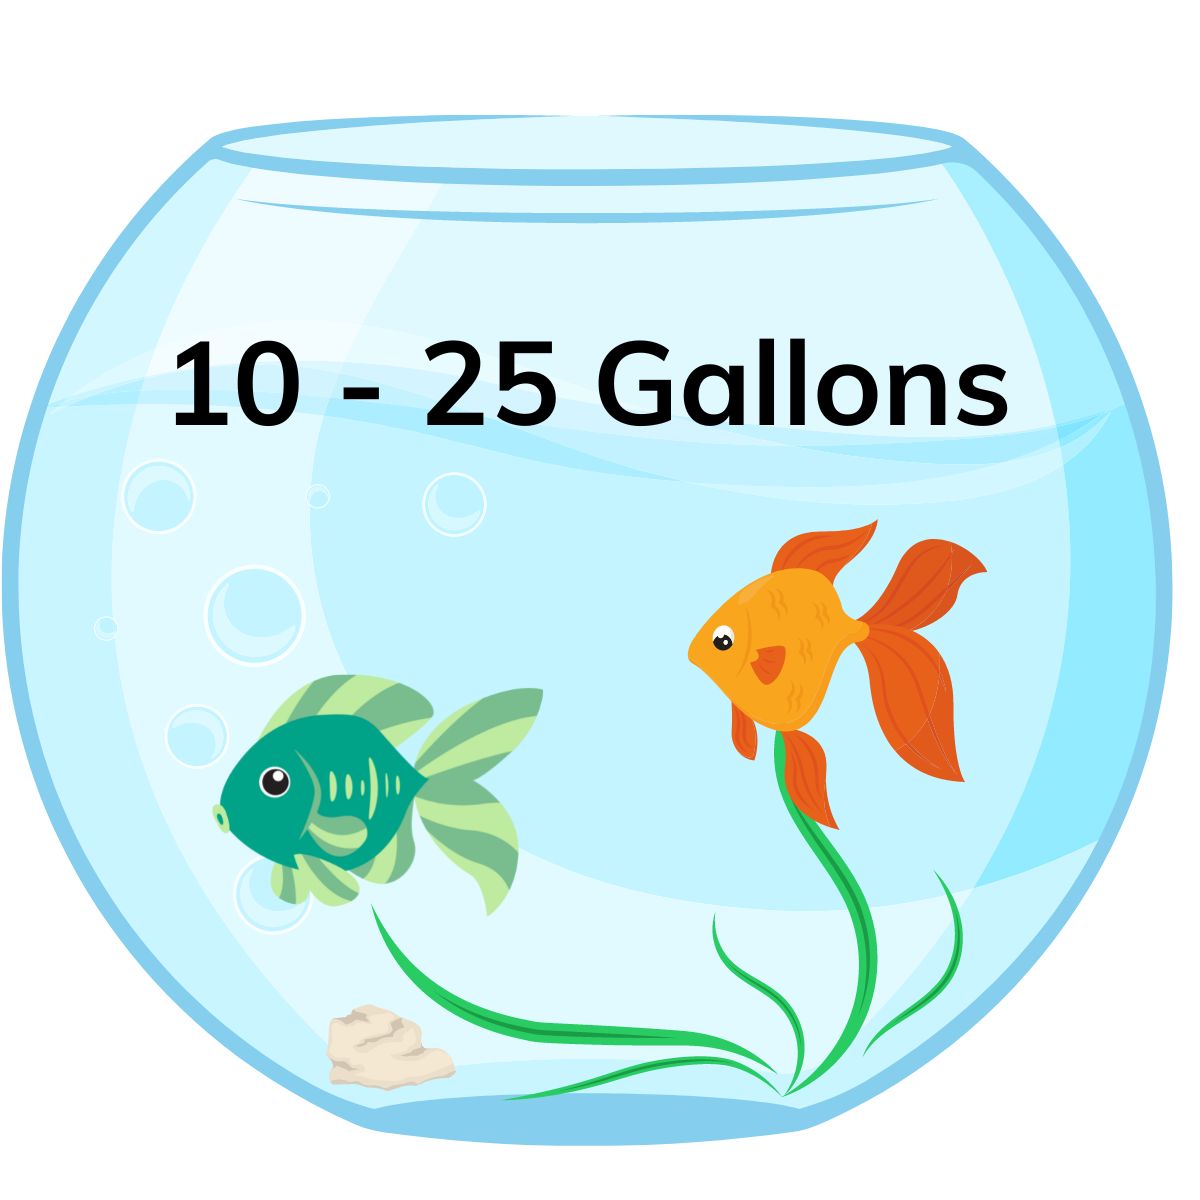 10 - 25 gallon tank